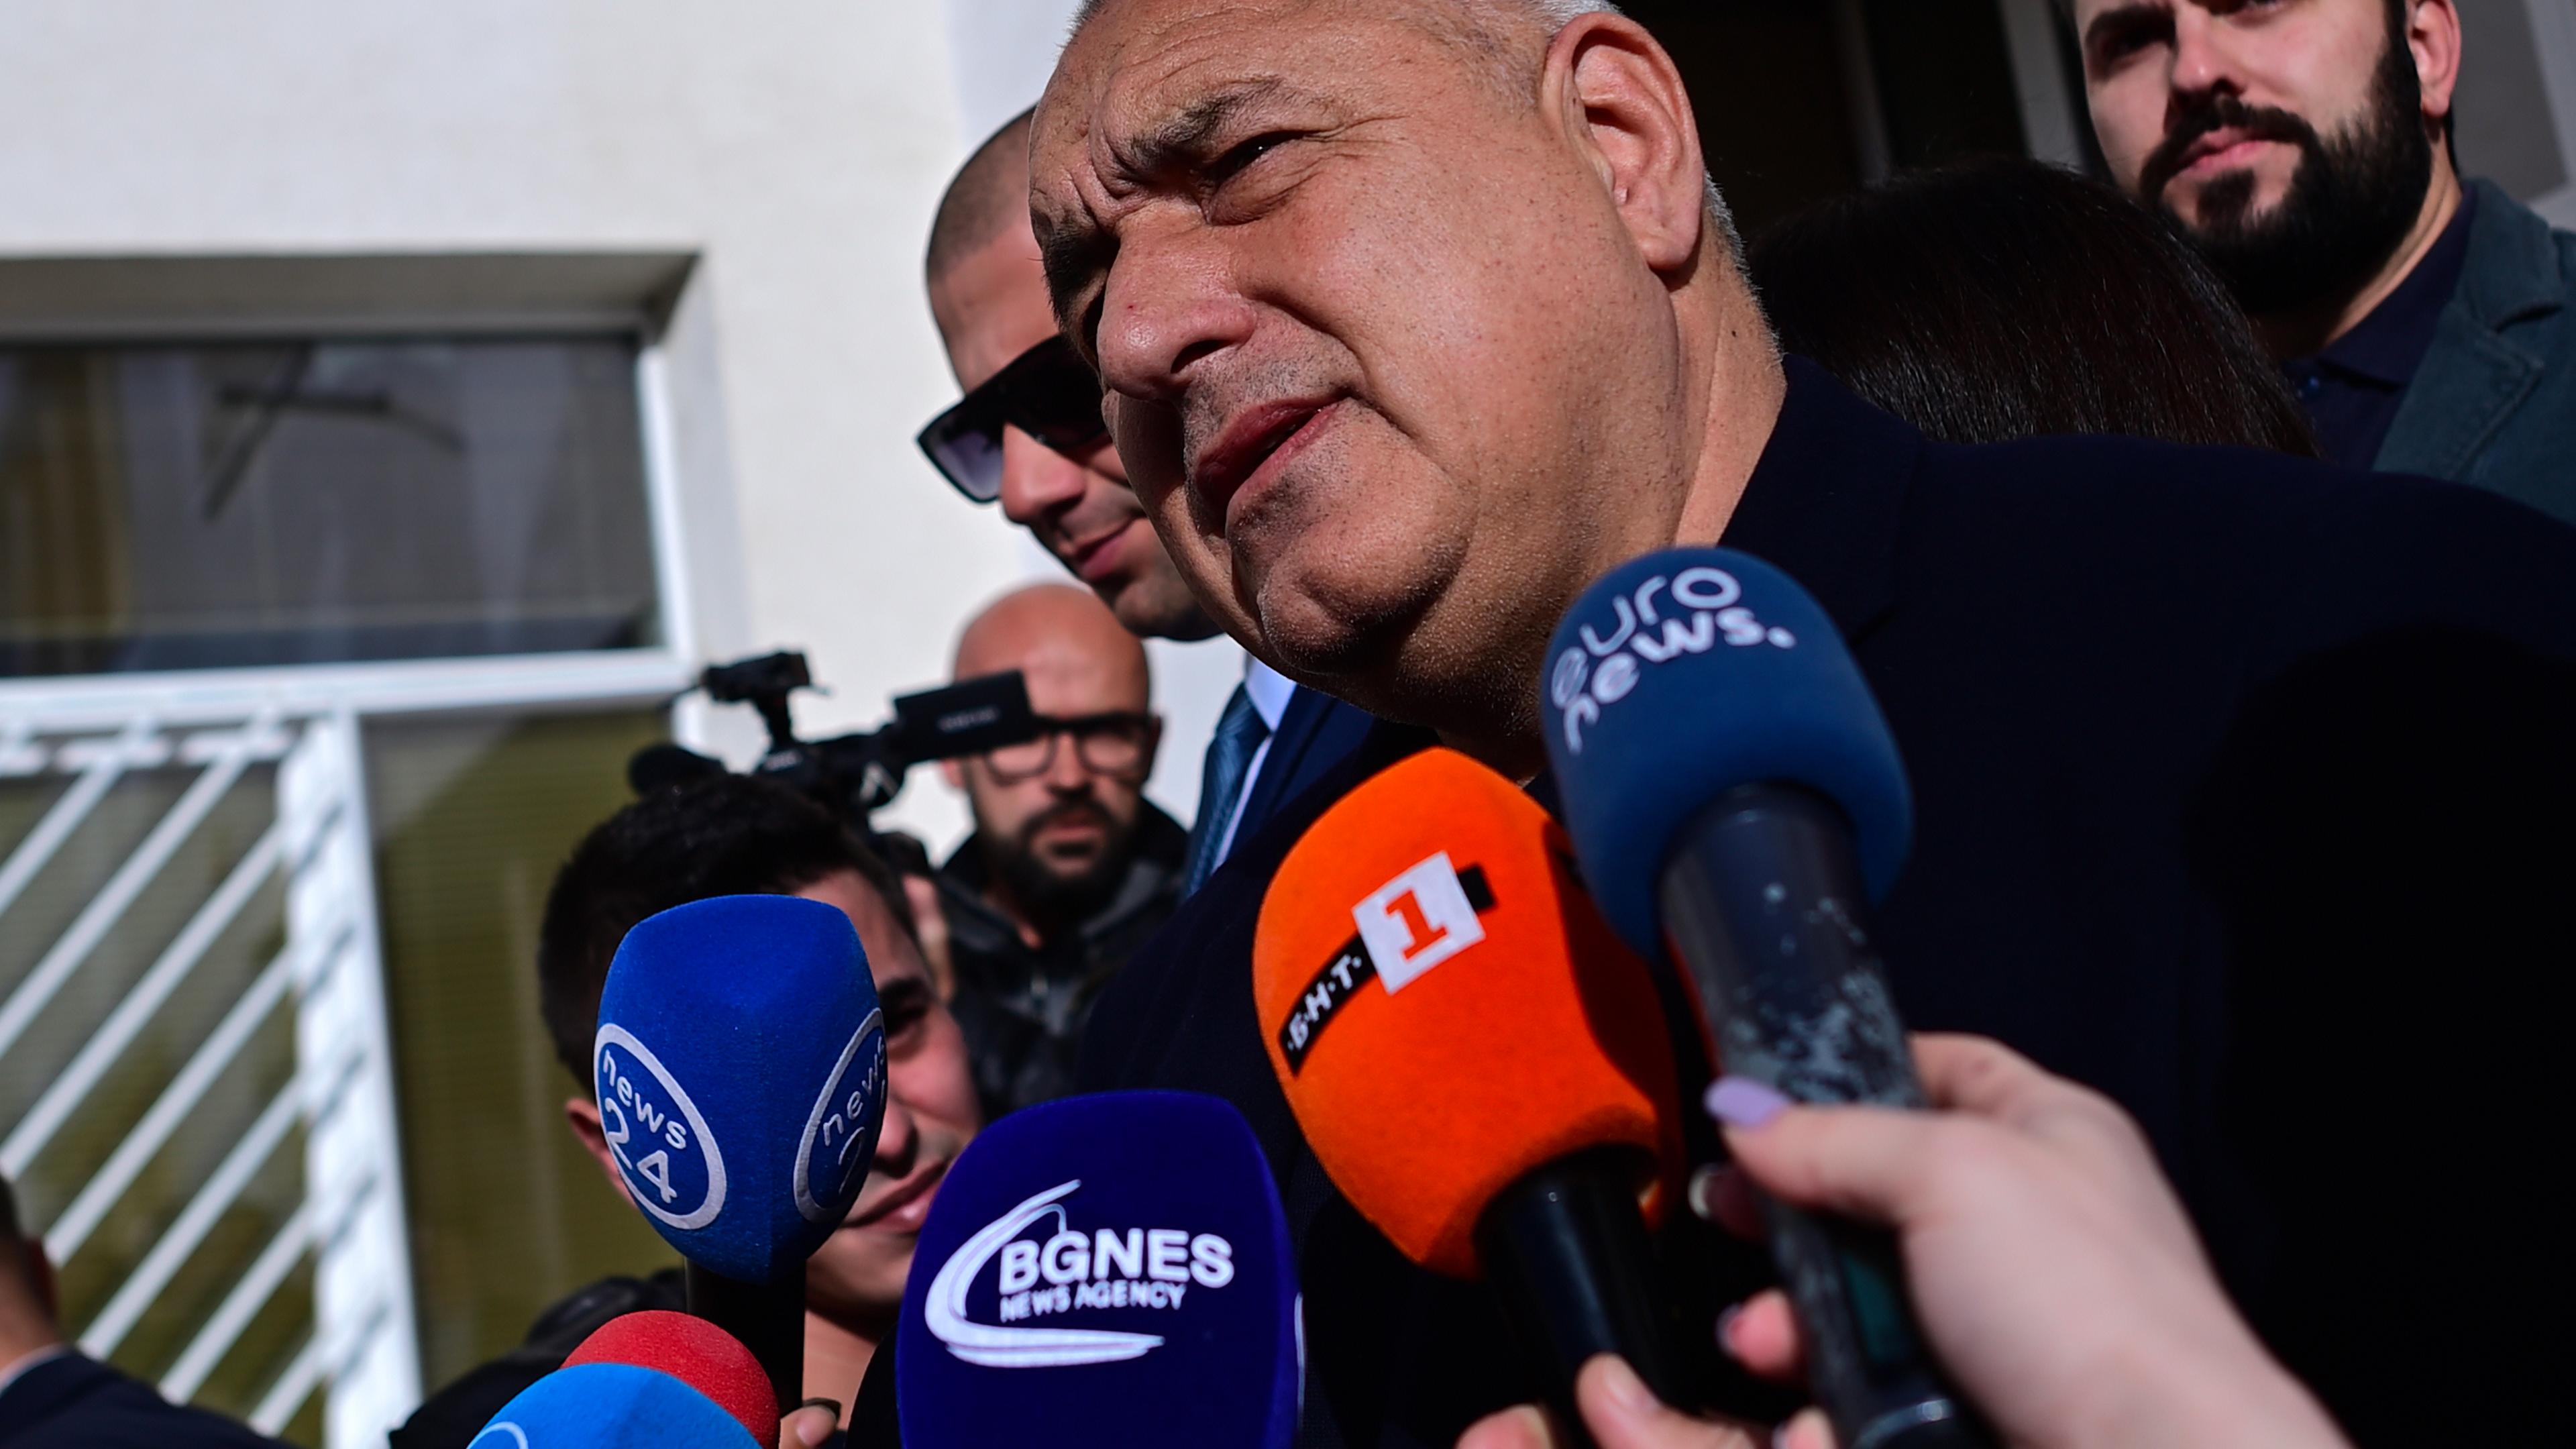 Der frühere bulgarische Ministerpräsident Boiko Borissow äußert sich nach seinem Wahlgang vor der Presse.